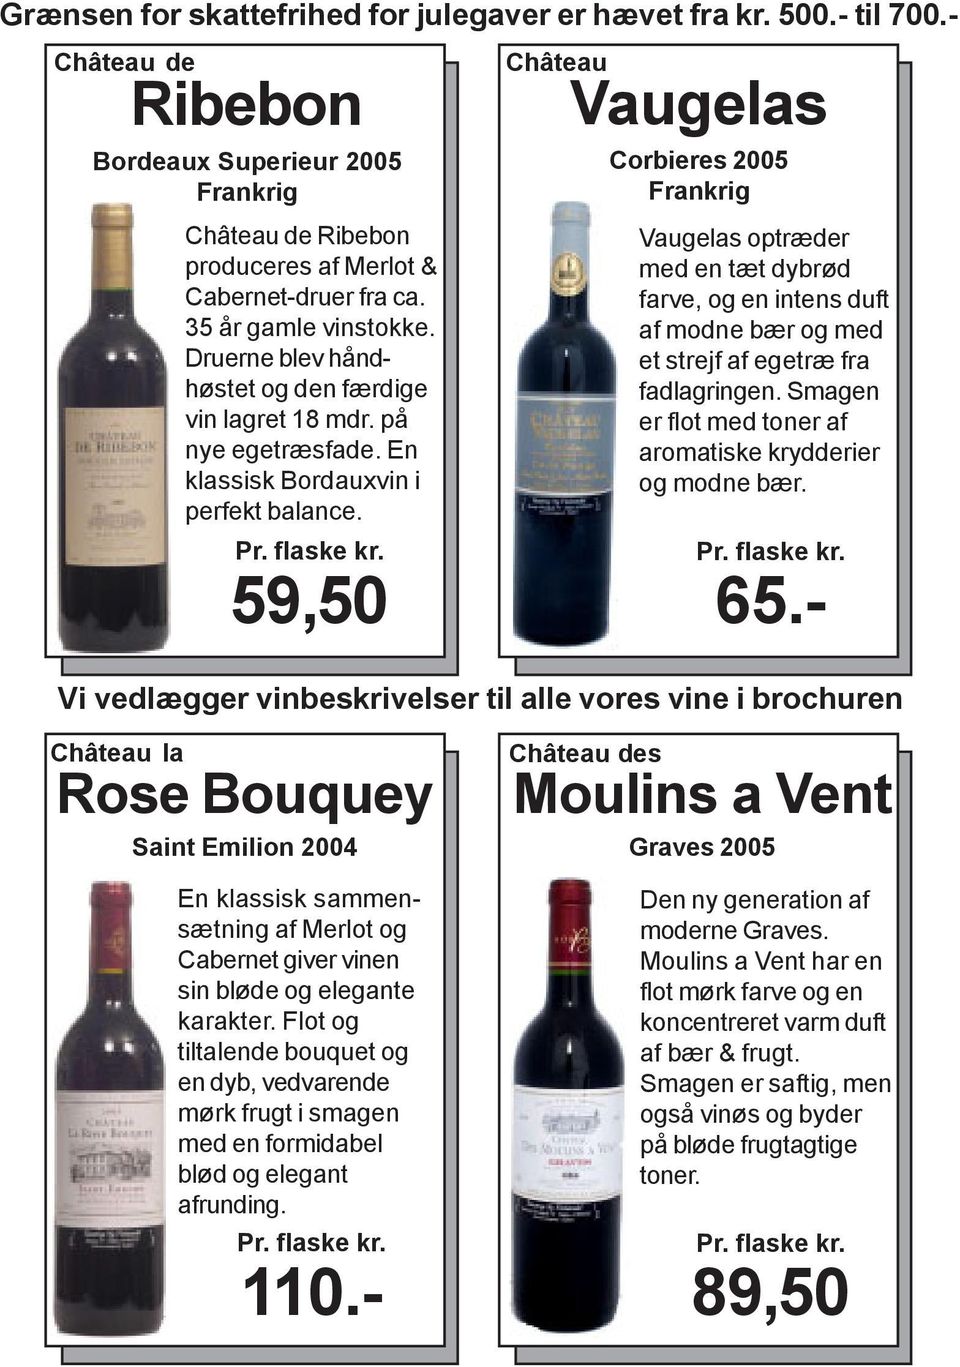 - Château la Rose Bouquey Saint Emilion 2004 En klassisk sammensætning af Merlot og Cabernet giver vinen sin bløde og elegante karakter.